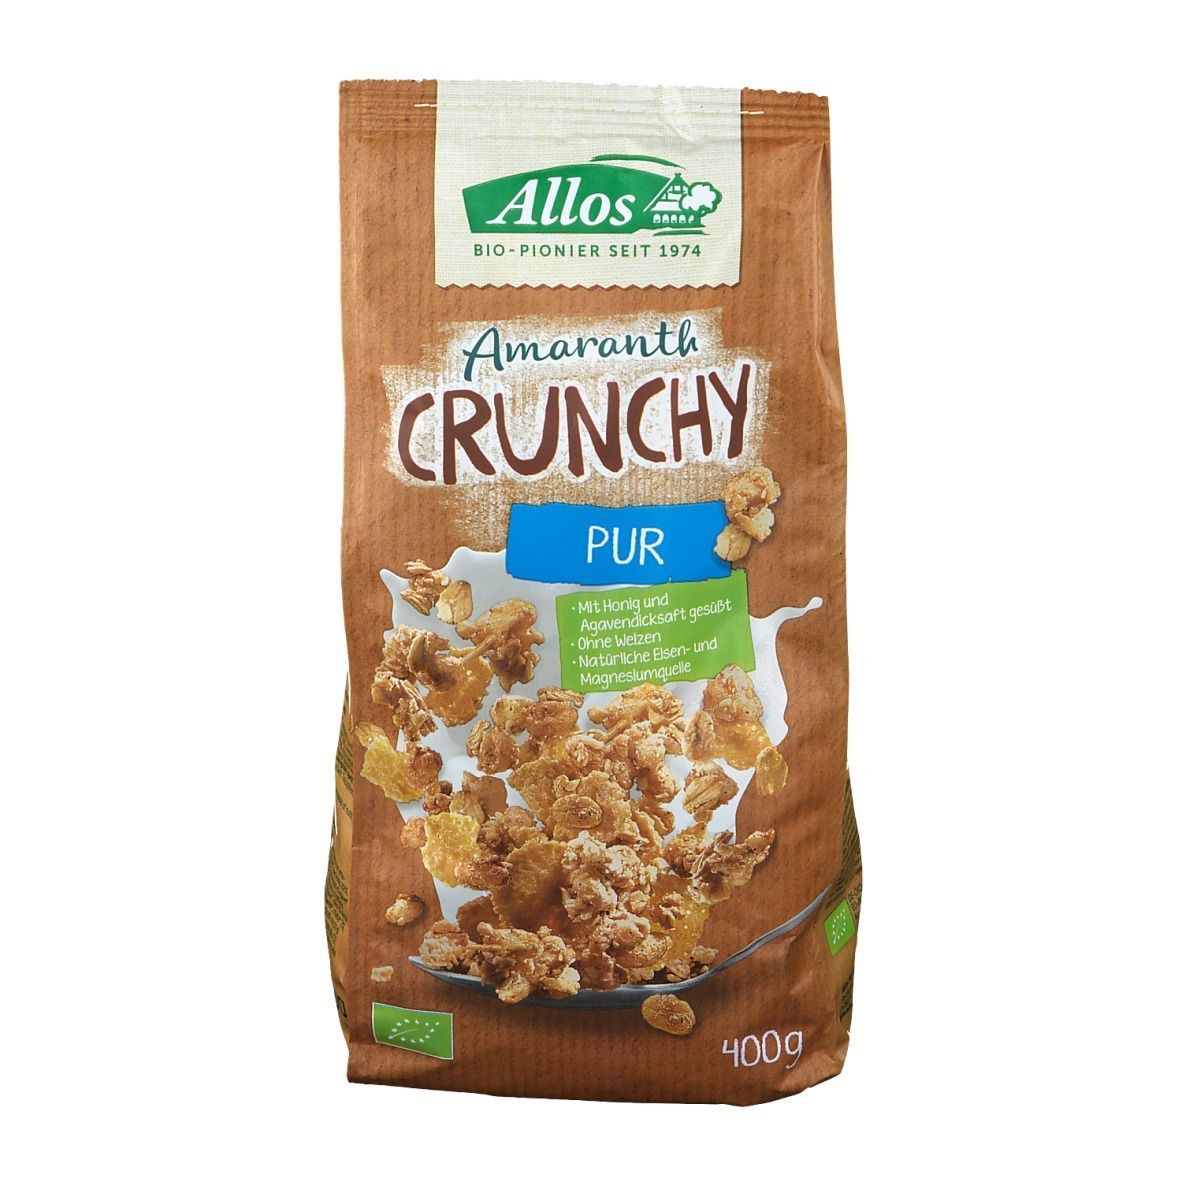 Allos Amaranth Crunchy Pur